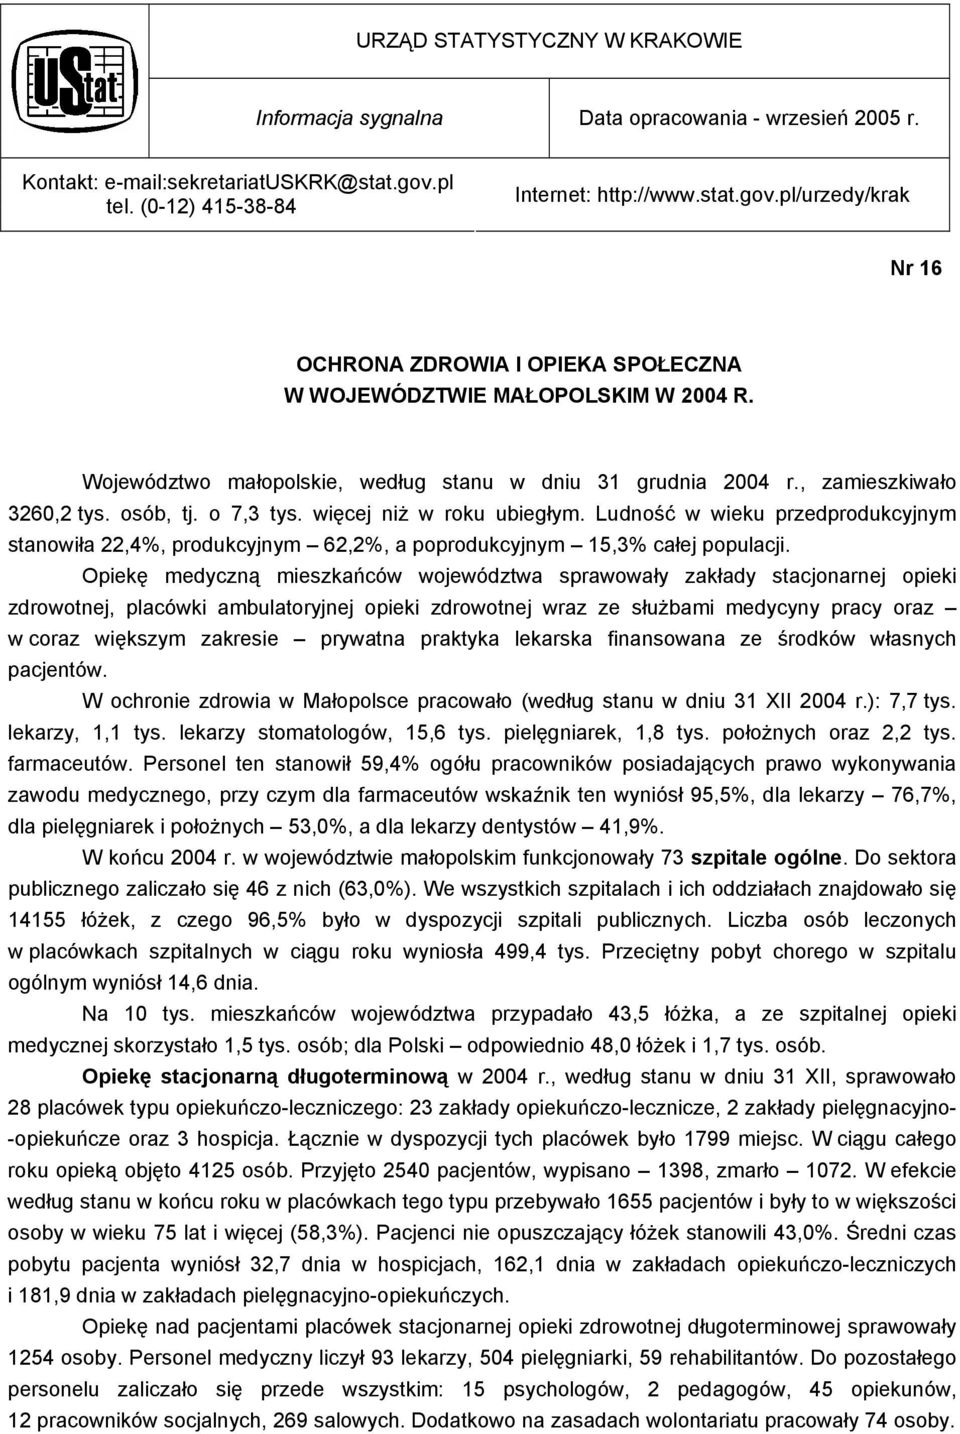 Województwo małopolskie, według stanu w dniu 31 grudnia 2004 r., zamieszkiwało 3260,2 tys. osób, tj. o 7,3 tys. więcej niż w roku ubiegłym.